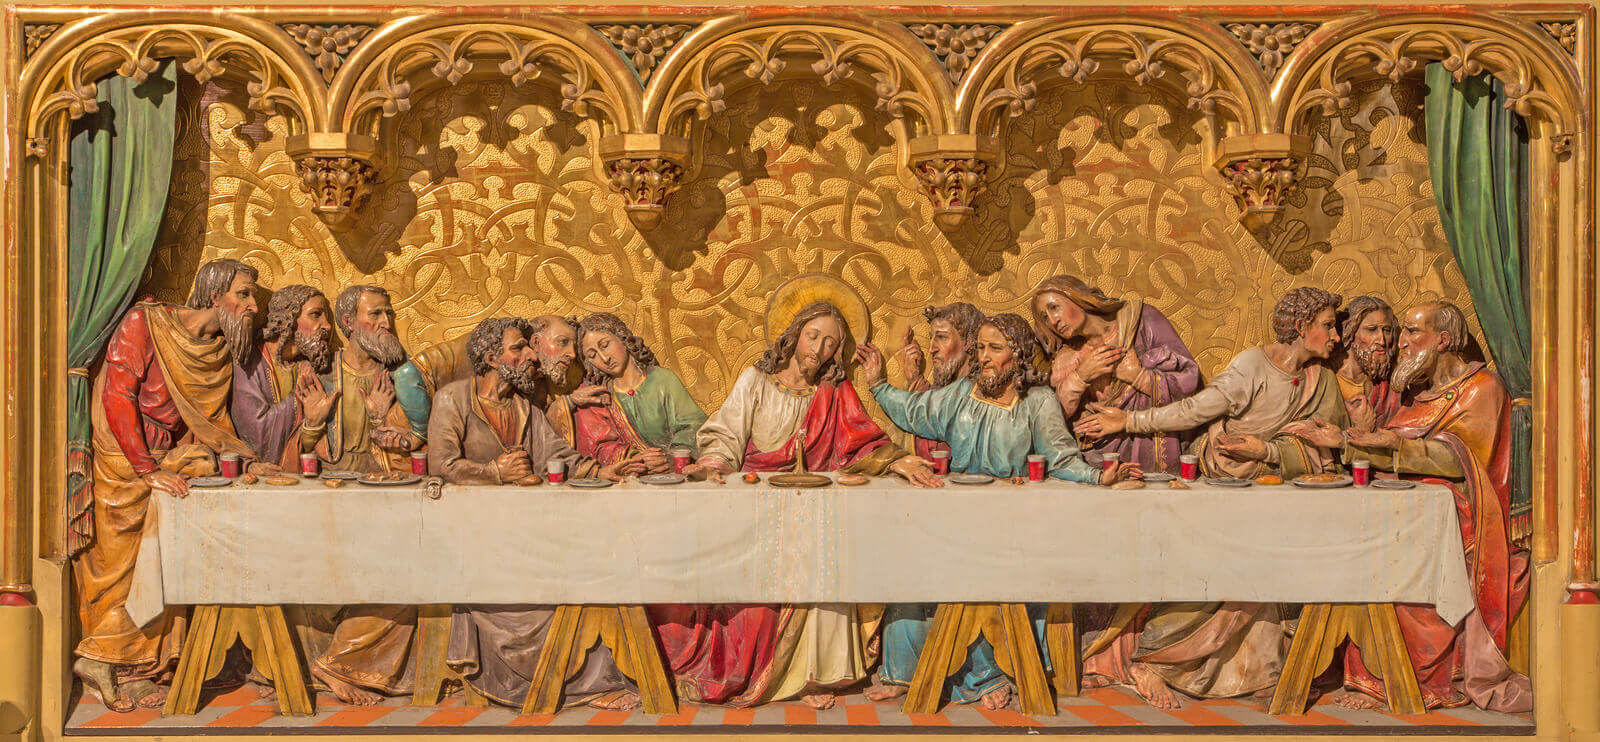 Quem foram os apóstolos de Jesus - Minha Bíblia Sagrada - Santa Ceia - Bartislava - Last supper of Christ scenei in cathedral